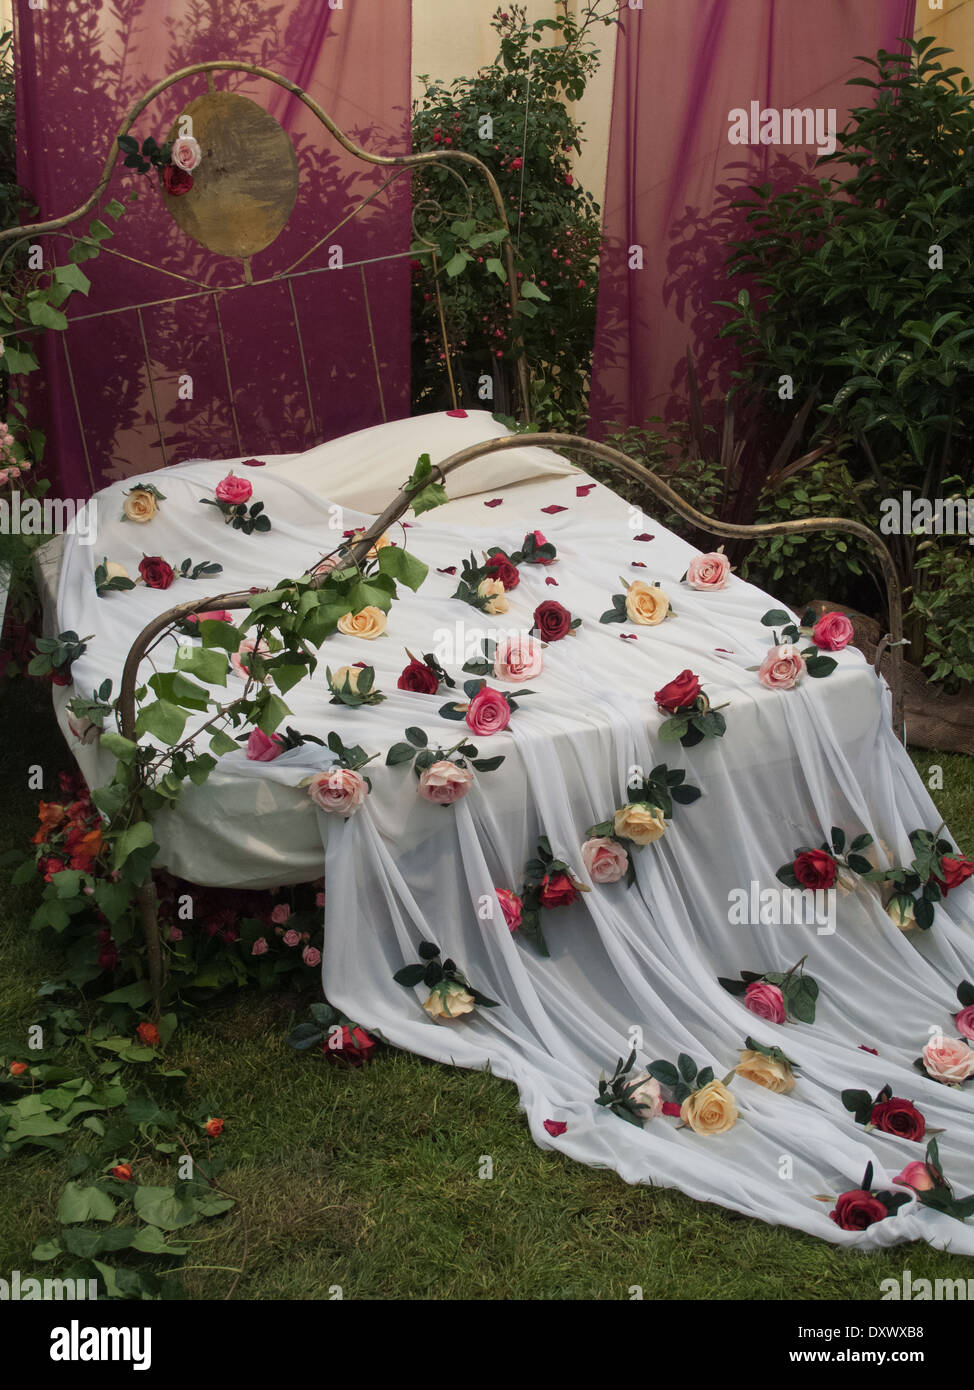 Bett im romantischen Stil mit Bettwäsche und Rosenblätter in Ausstellung  Display, Spanien Stockfotografie - Alamy